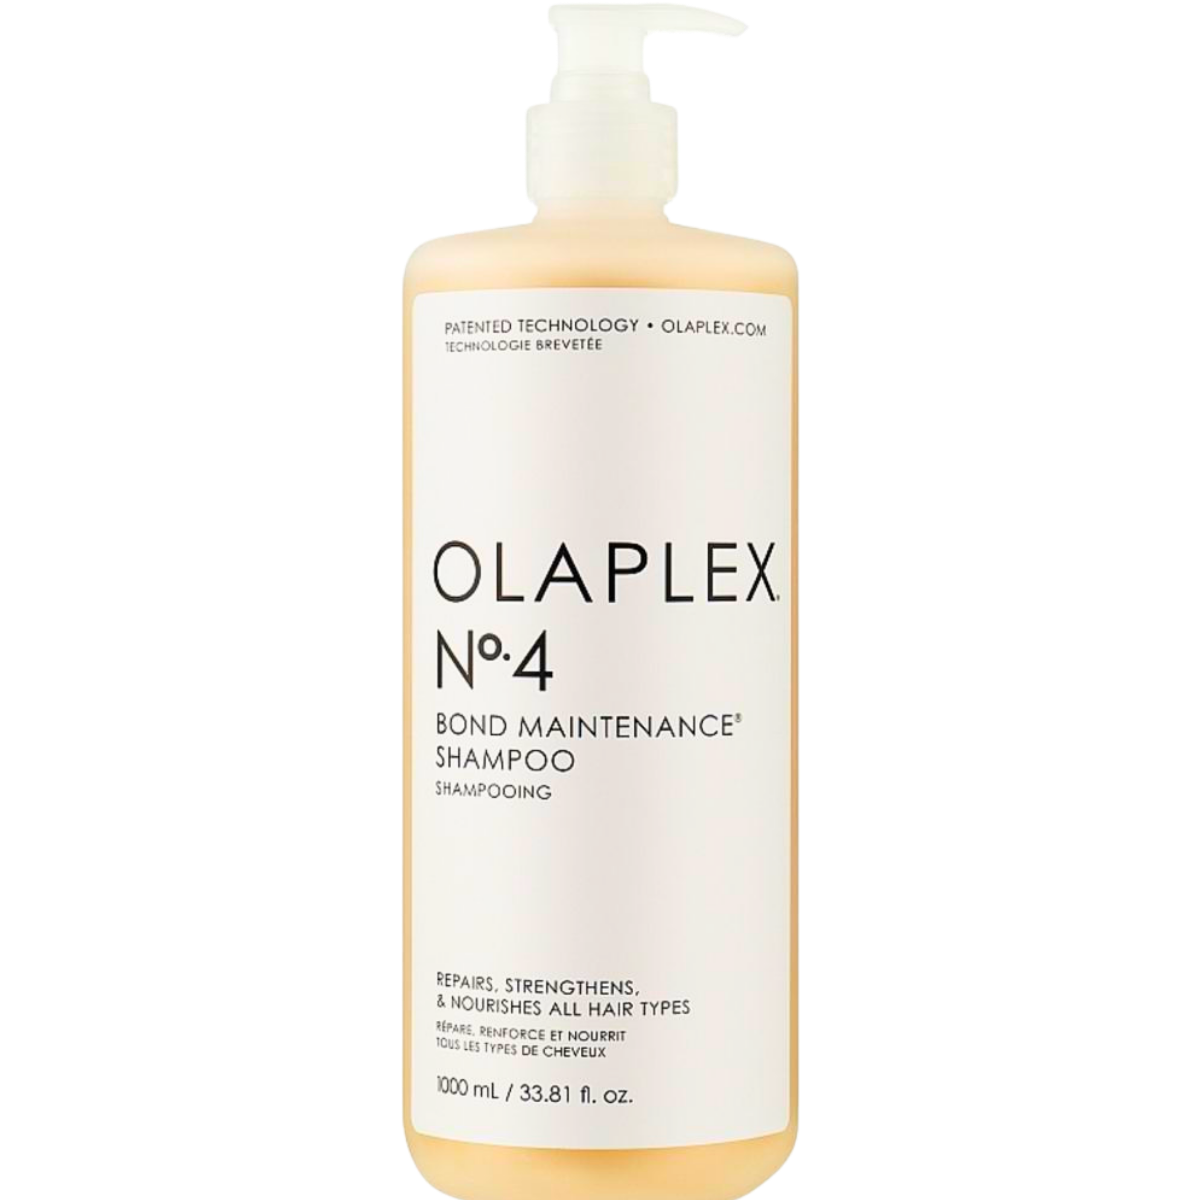 שמפו לשיער OLAPLEX אולפלקס מס` 4 1000 מ"ל